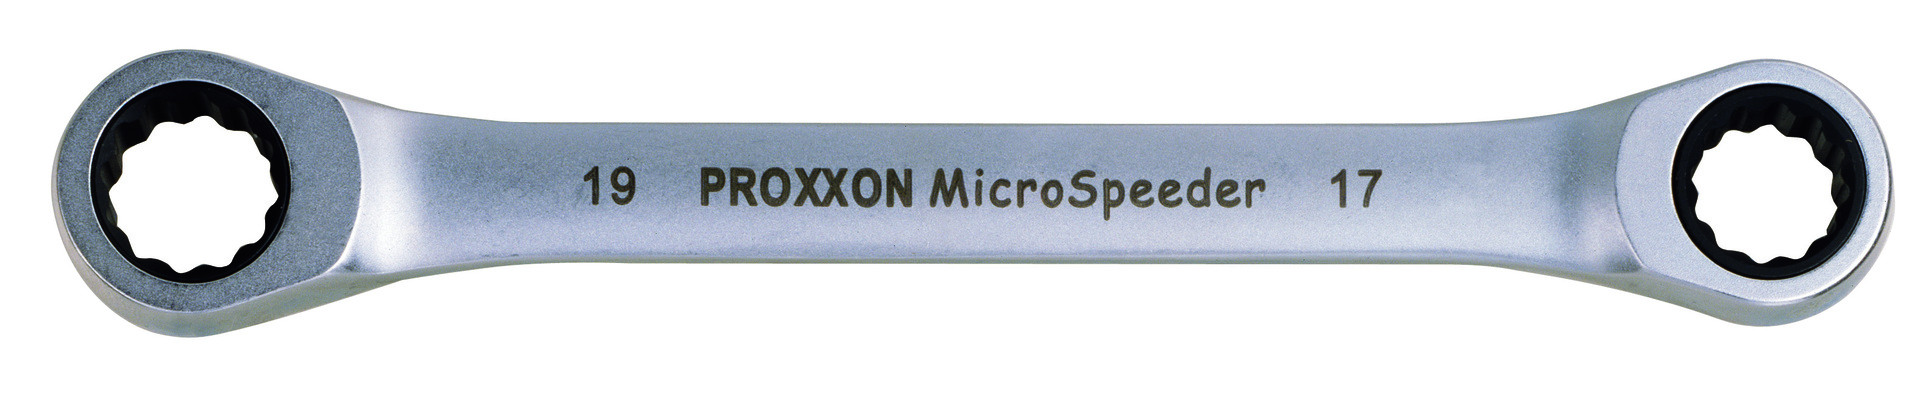 PROXXON GmbH Micro-Speeder Ratschenschlüssel 10x11mm